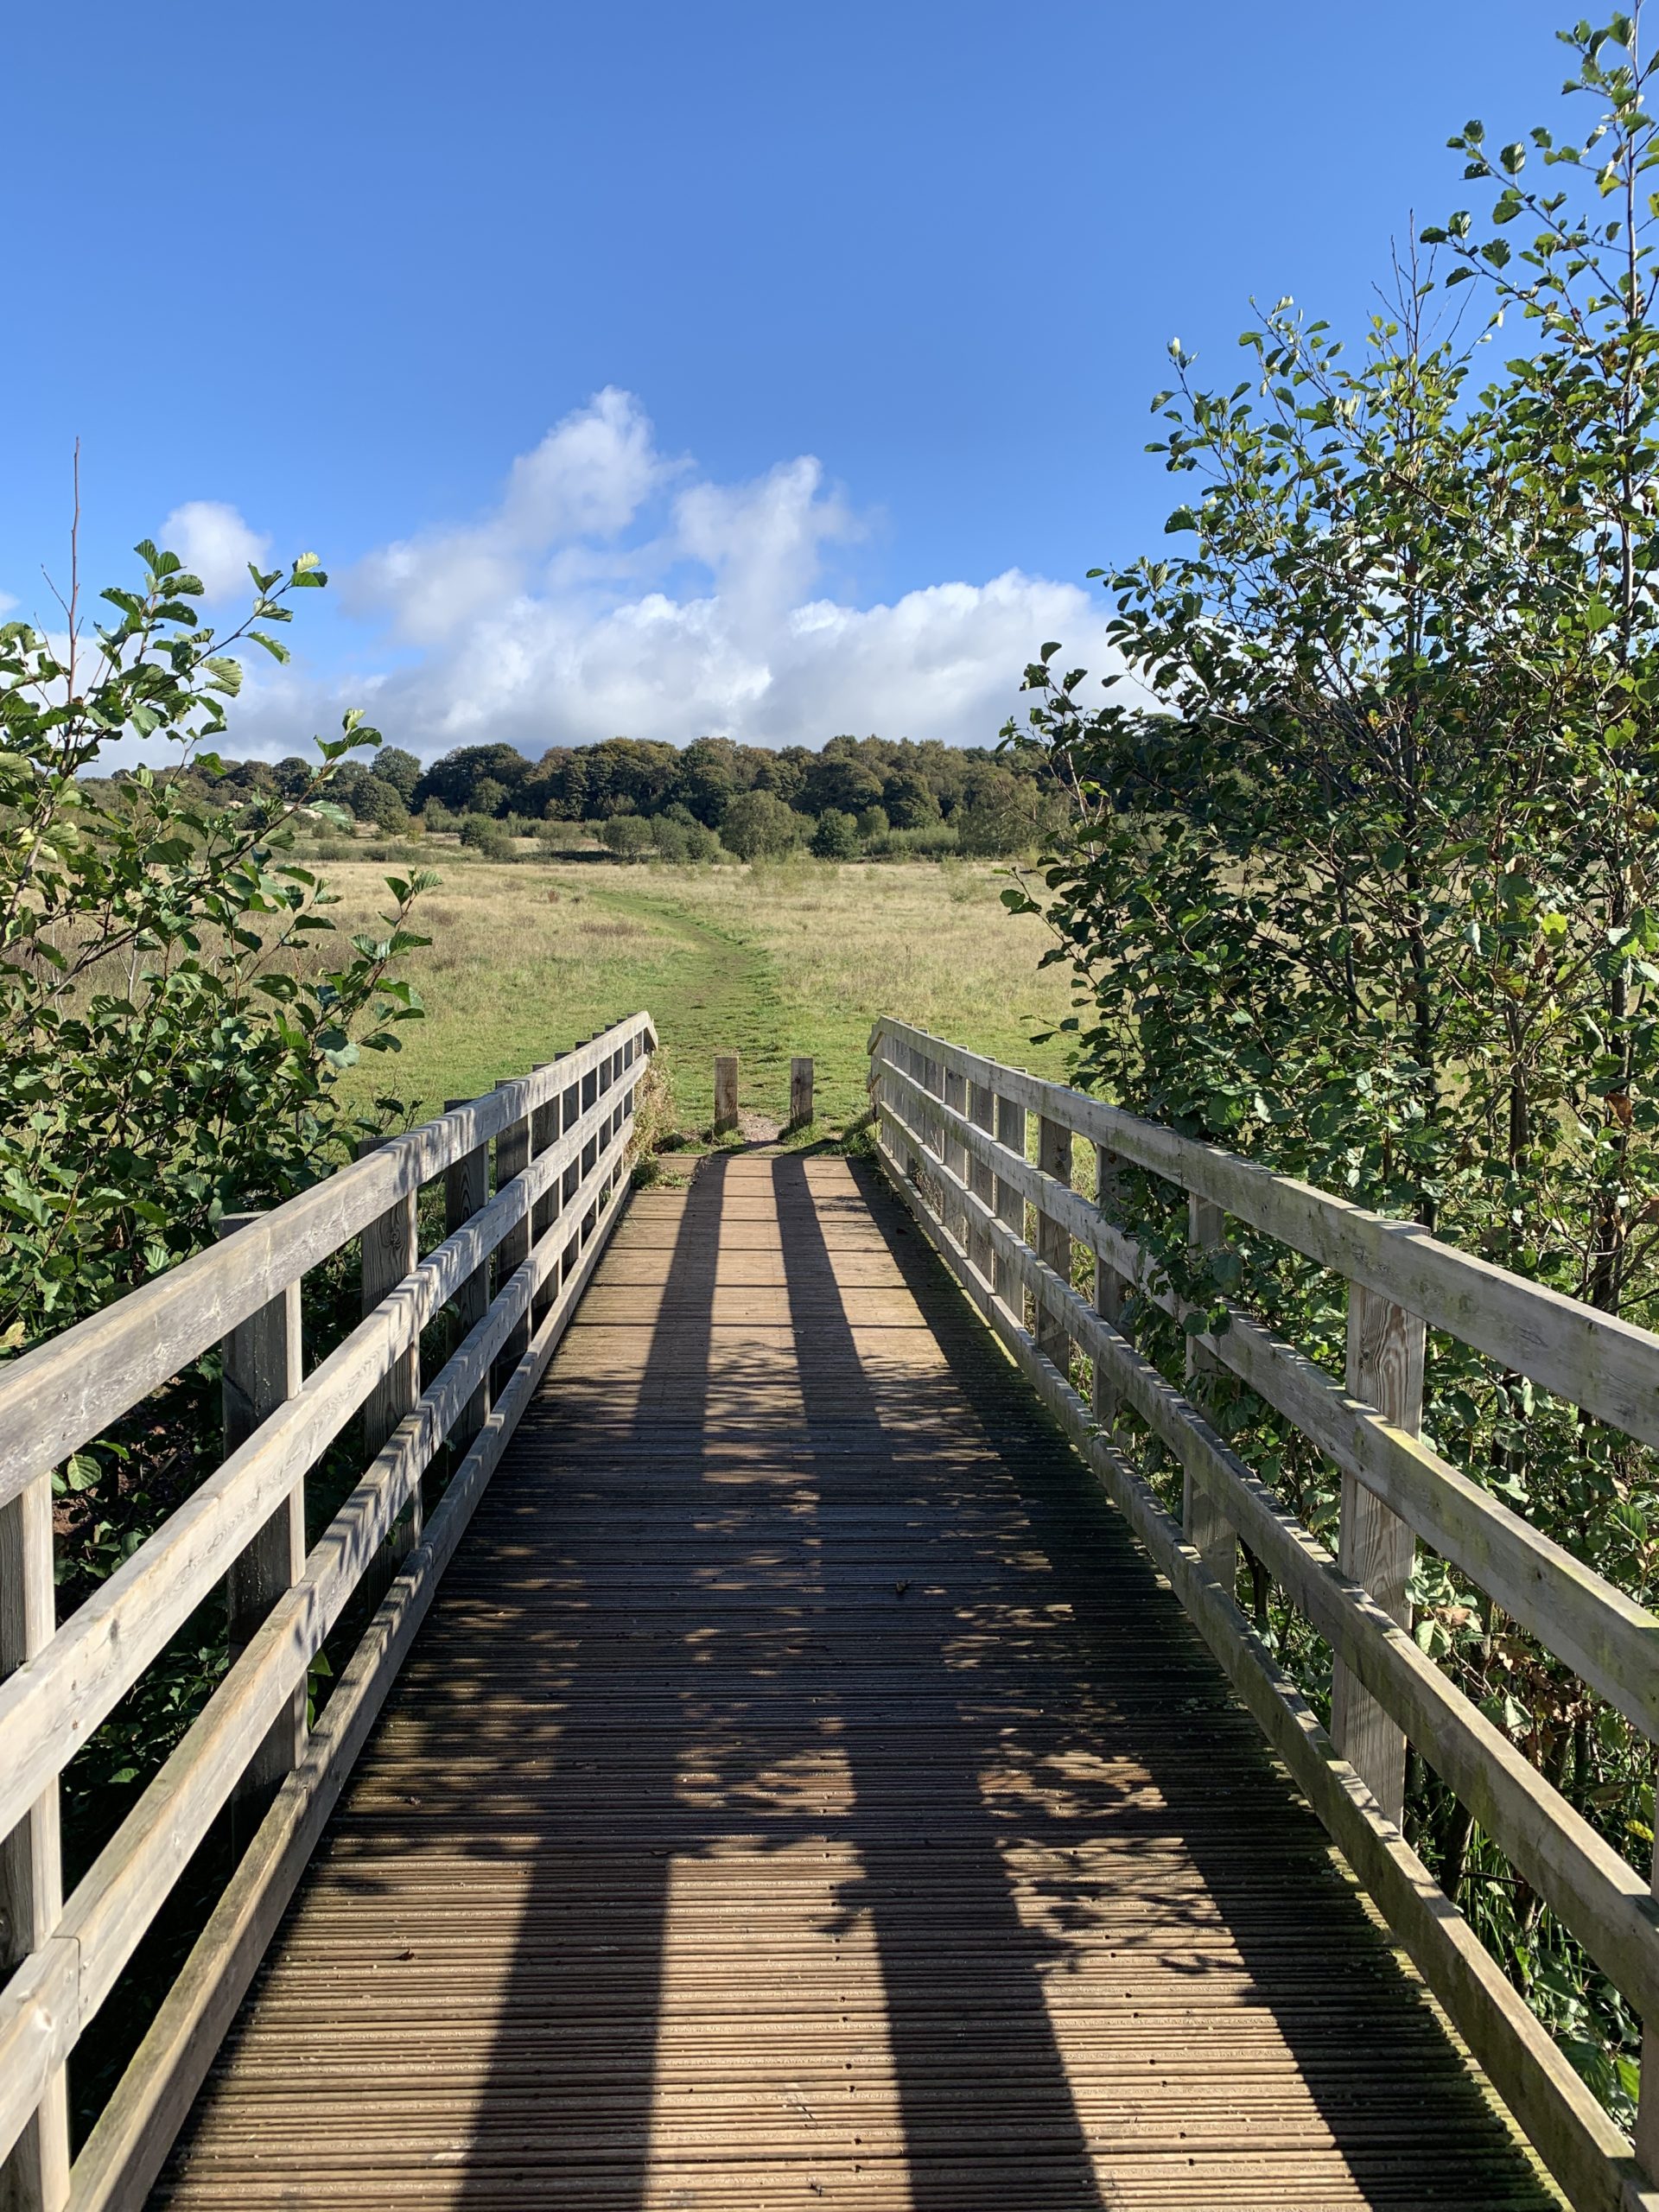 a wooden bridge over a field